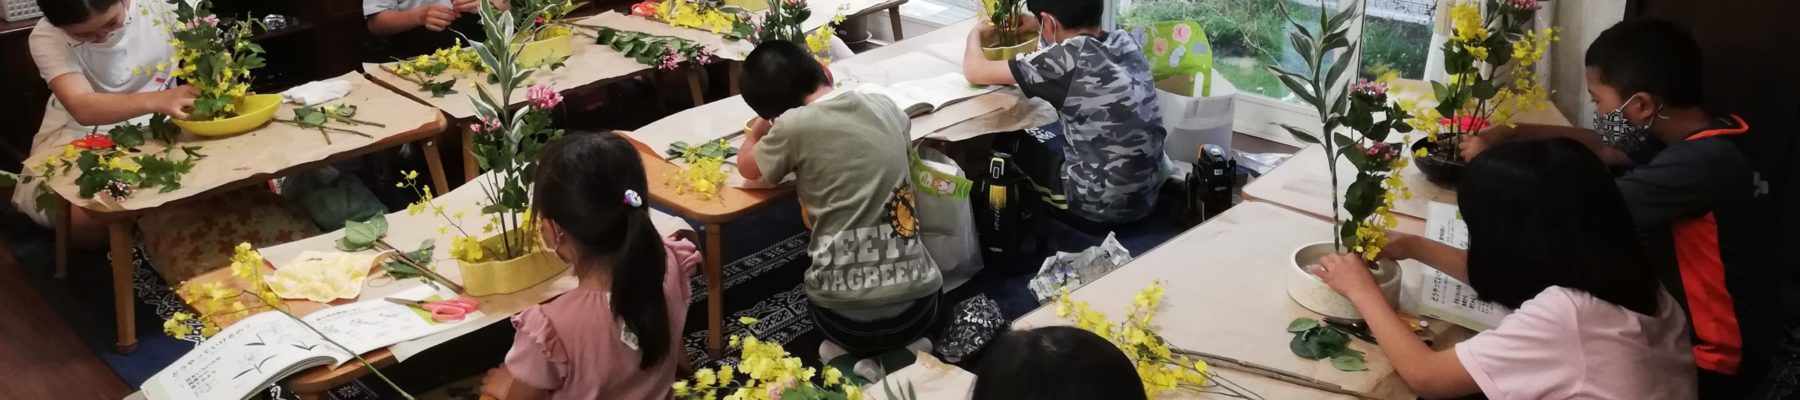 　生け花教室（華道育成会）Flower arrangement class (flower arrangement training society)